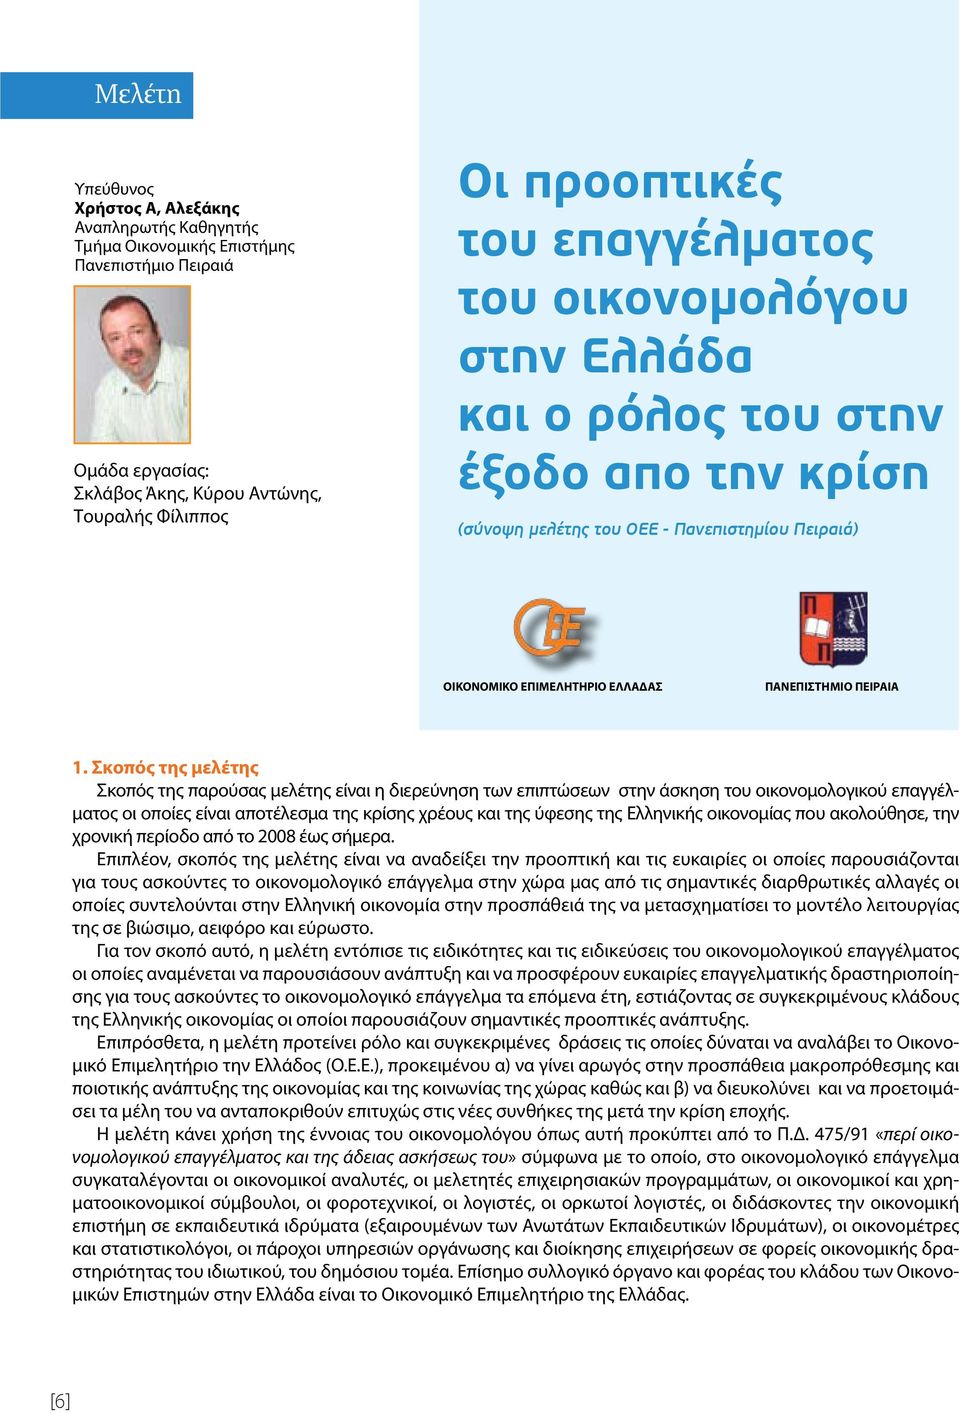 Σκοπός της μελέτης Σκοπός της παρούσας μελέτης είναι η διερεύνηση των επιπτώσεων στην άσκηση του οικονομολογικού επαγγέλματος οι οποίες είναι αποτέλεσμα της κρίσης χρέους και της ύφεσης της Ελληνικής